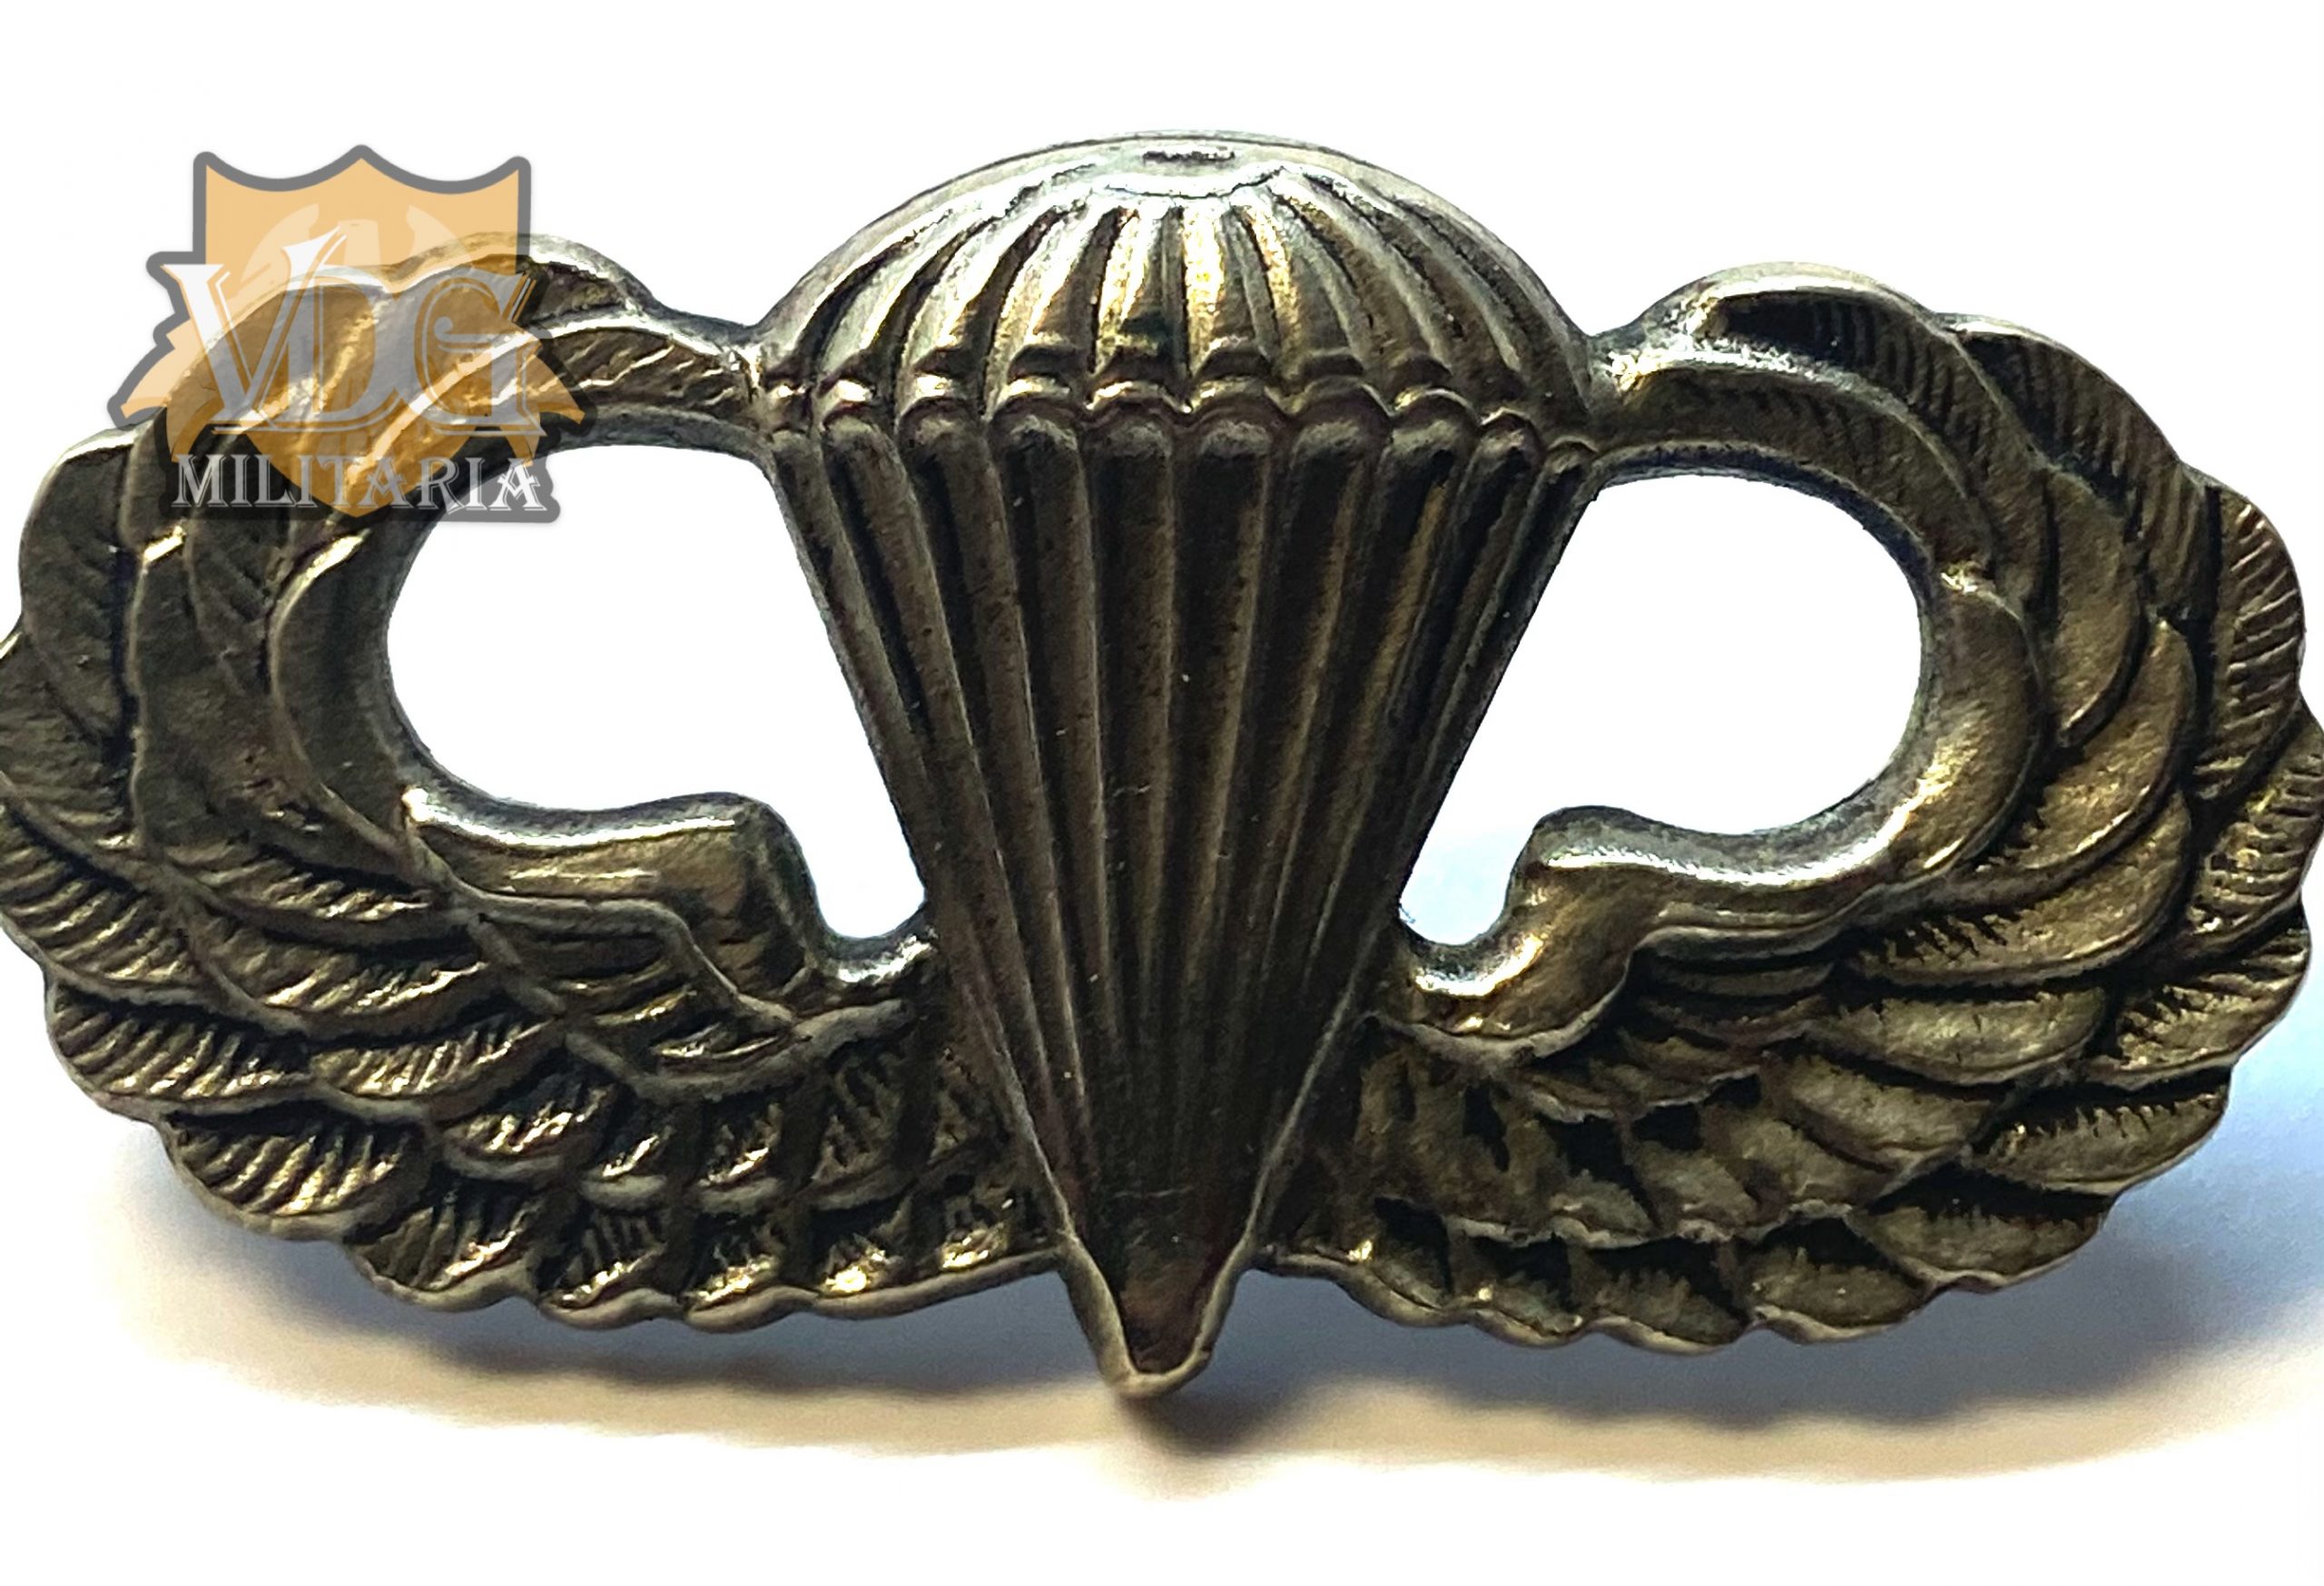 WW2 US Navy USN Brass Padlock with Key